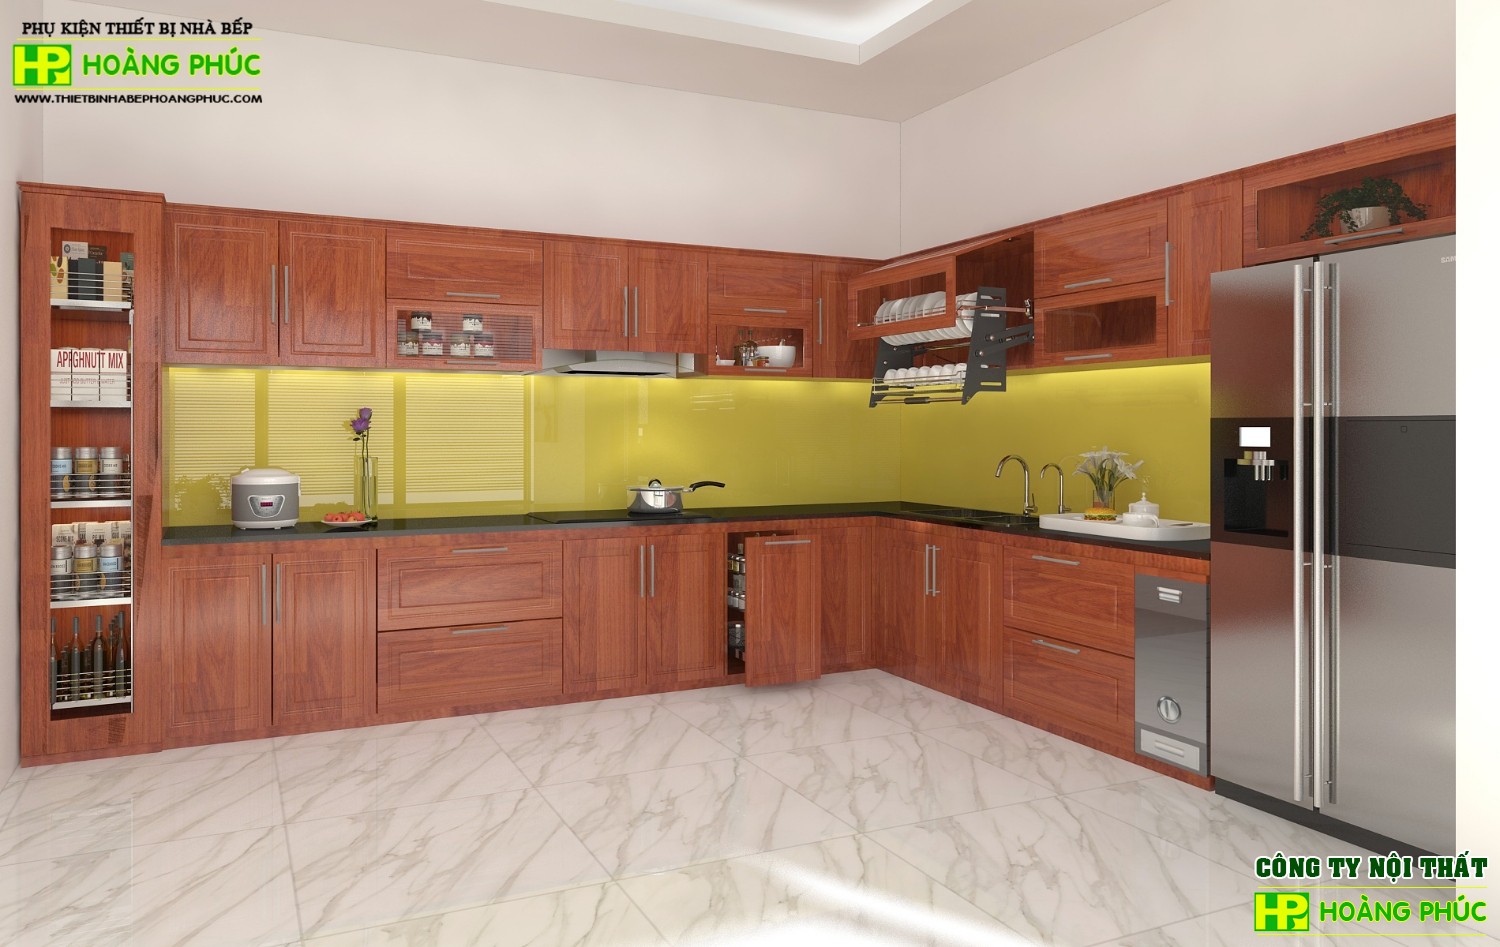 Được sản xuất với chất liệu cao cấp, tích hợp nhiều tính năng thông minh, BGCX-01 sẽ đáp ứng mọi nhu cầu của gia đình bạn. Hơn nữa, kiểu dáng hiện đại cùng màu sắc tinh tế sẽ khiến căn bếp của bạn trở nên ấn tượng và sang trọng.